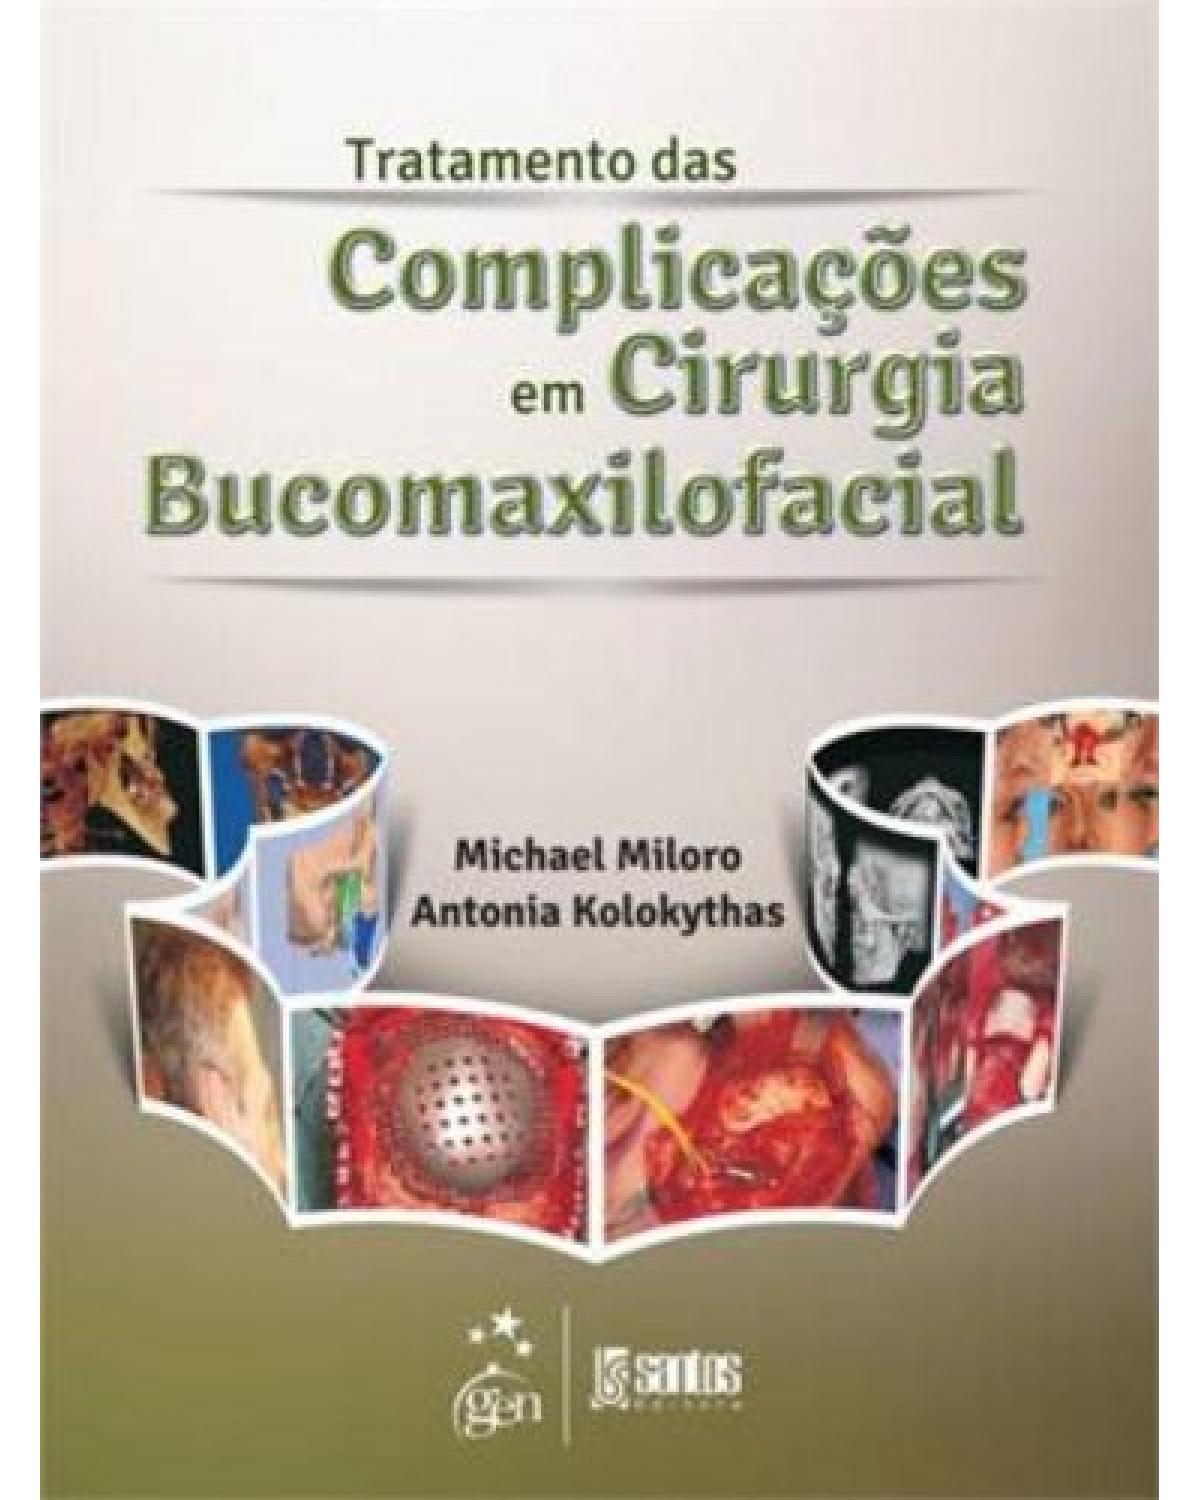 Tratamento das complicações em cirurgia bucomaxilofacial - 1ª Edição | 2013